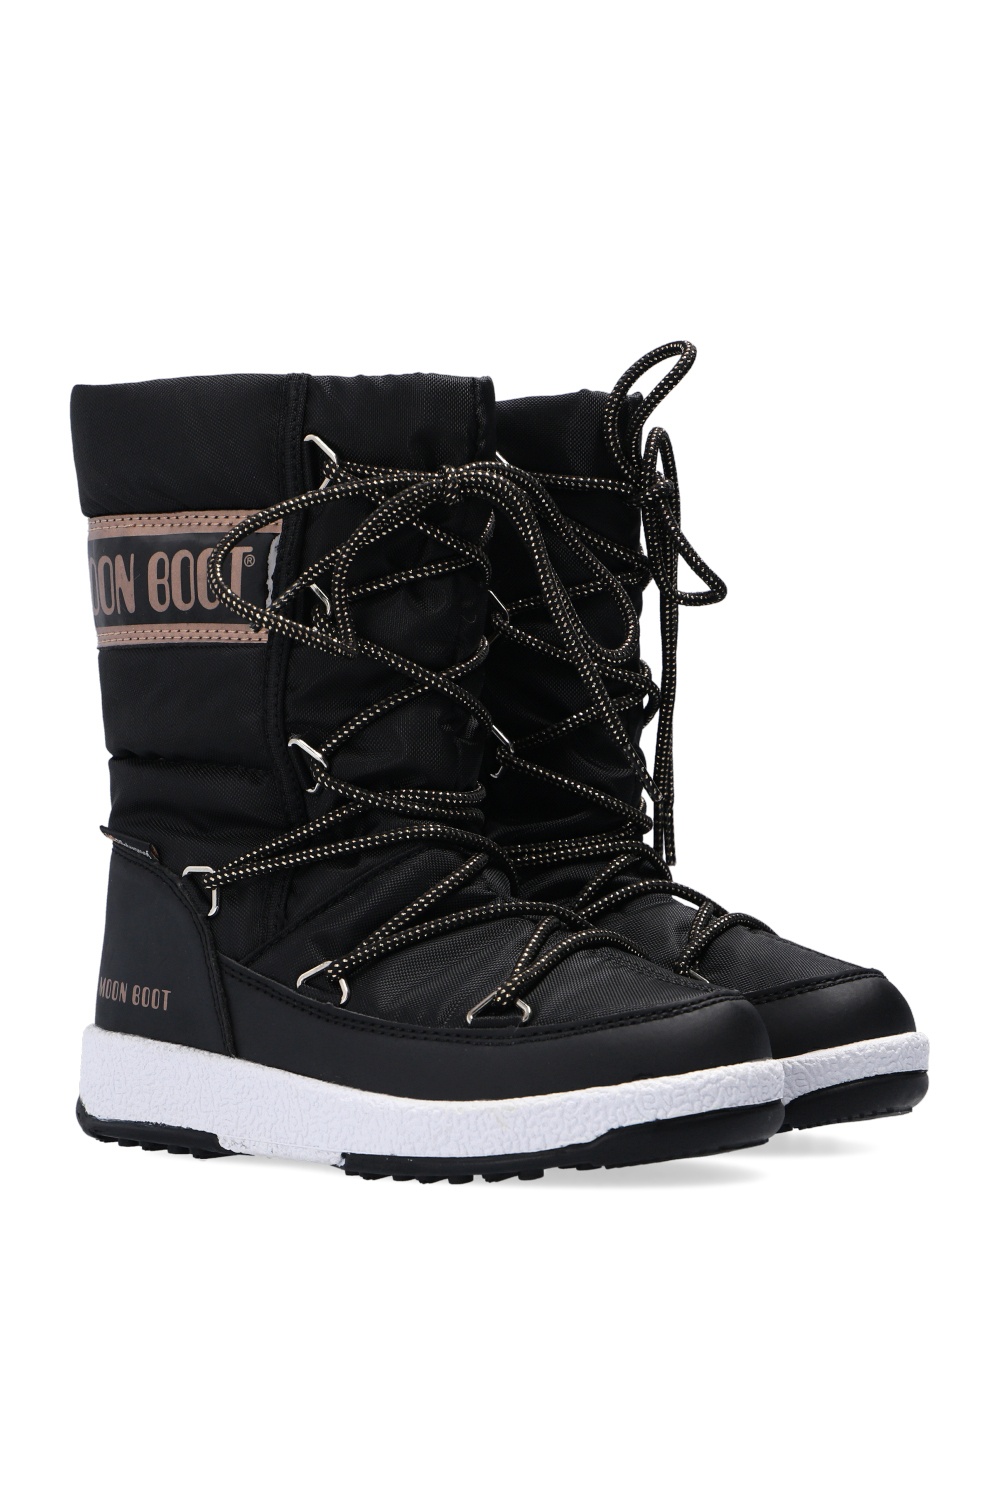 zapatillas de running Nike constitución ligera 10k talla 38.5 entre 60 y 100 ‘JR Girl Quilted WP’ snow boots